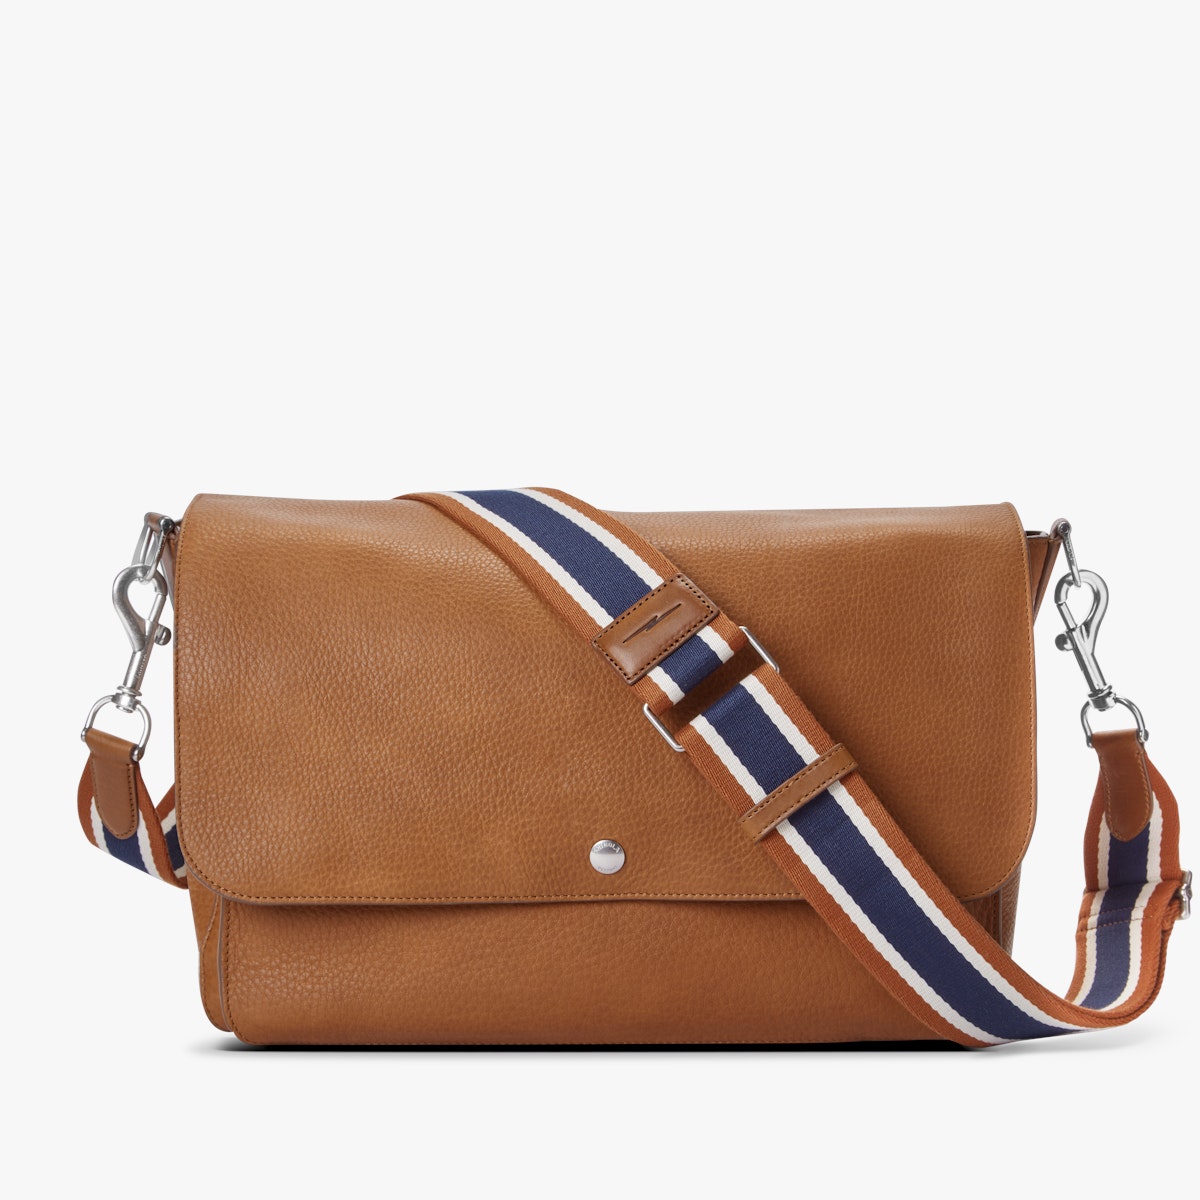 Vachetta Leather Strap for Shoulder Bag